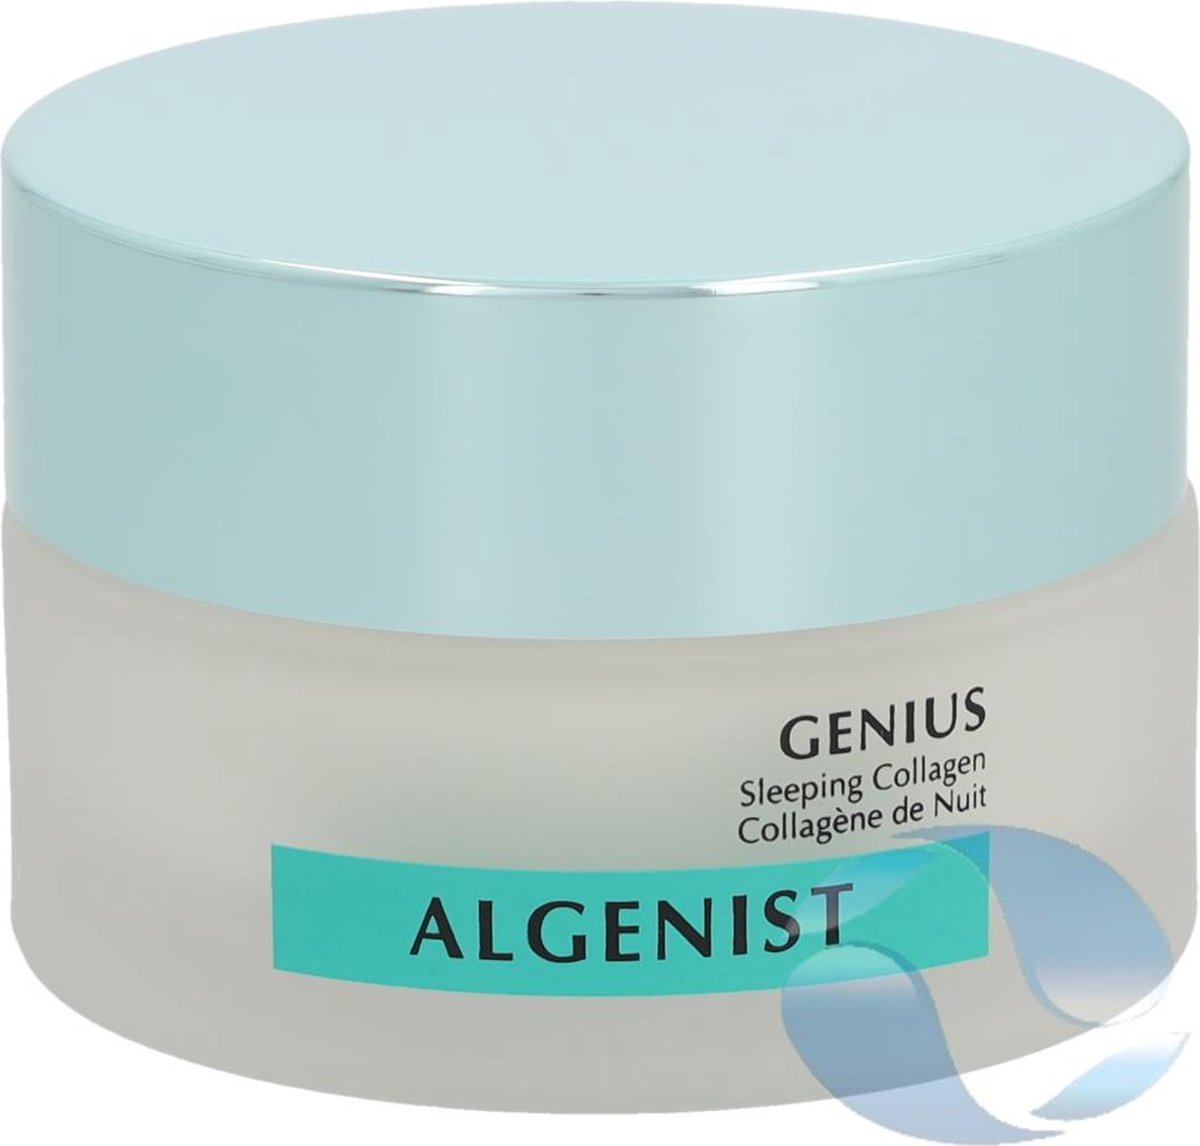 Algenist Genius Sleeping Collagen 60ml